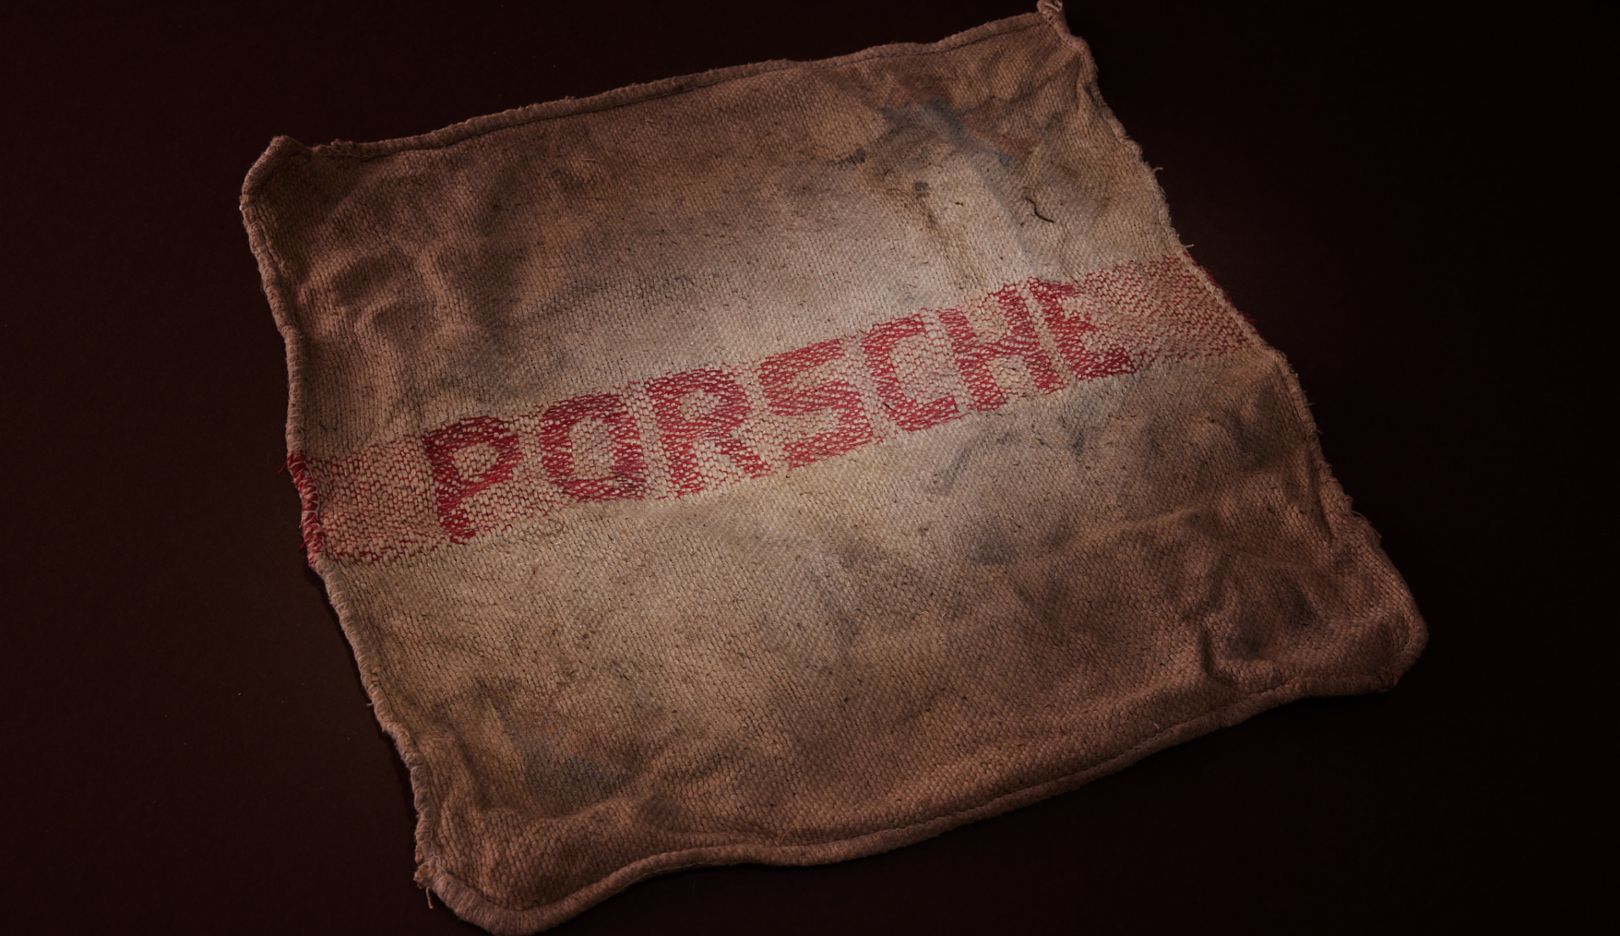 Mesmo passados mais de 50 anos, o pano Porsche ainda cheira a óleo.